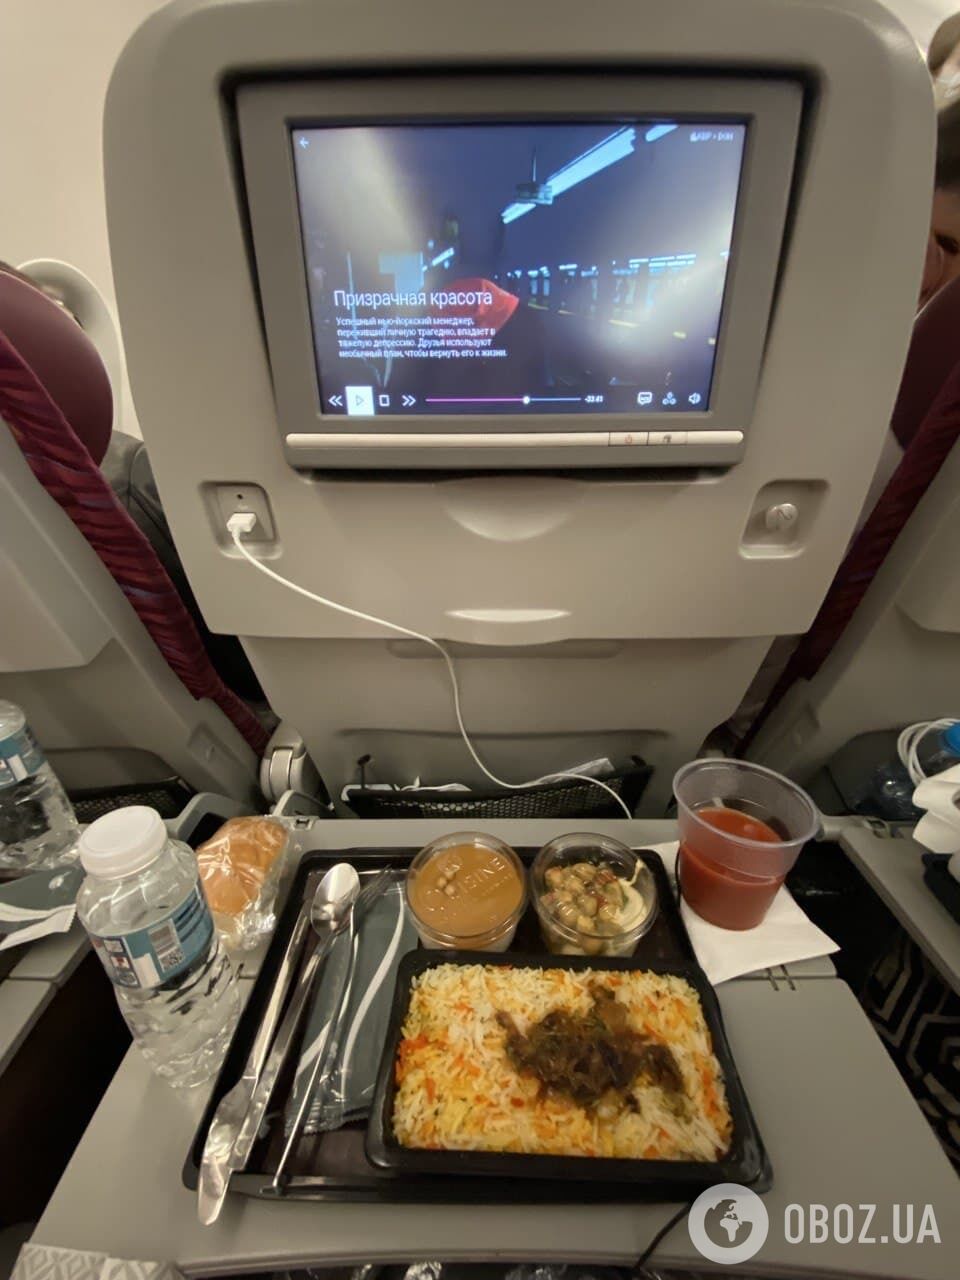 Харчування та медіасистема на борту літака Qatar Airways